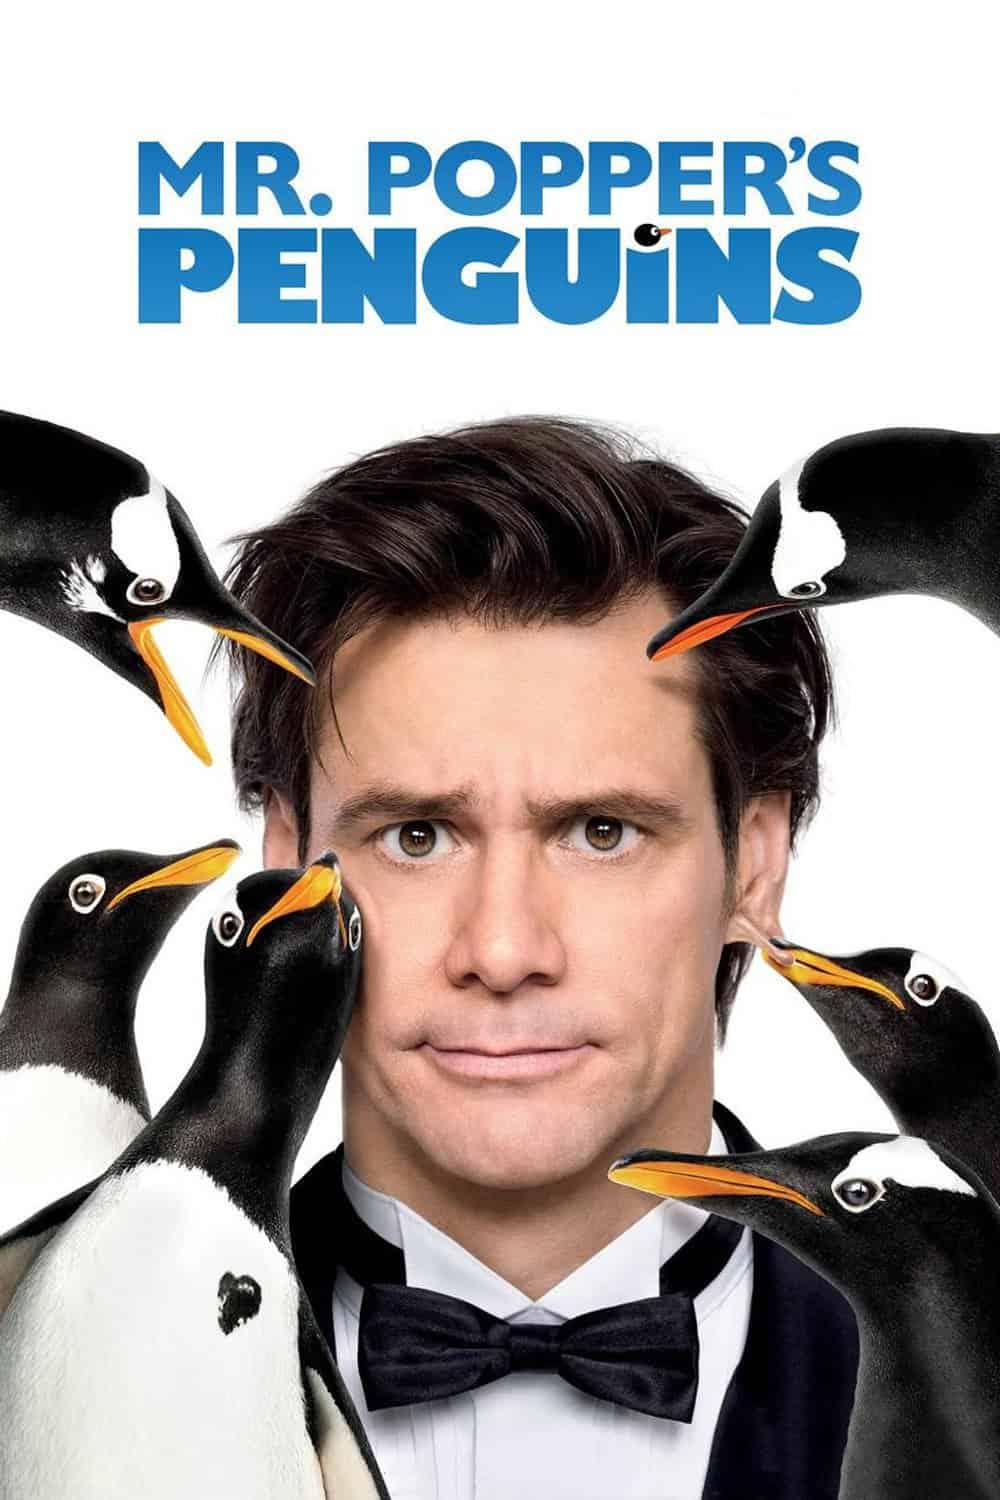 Mr. Popper's Penguins, 2011 